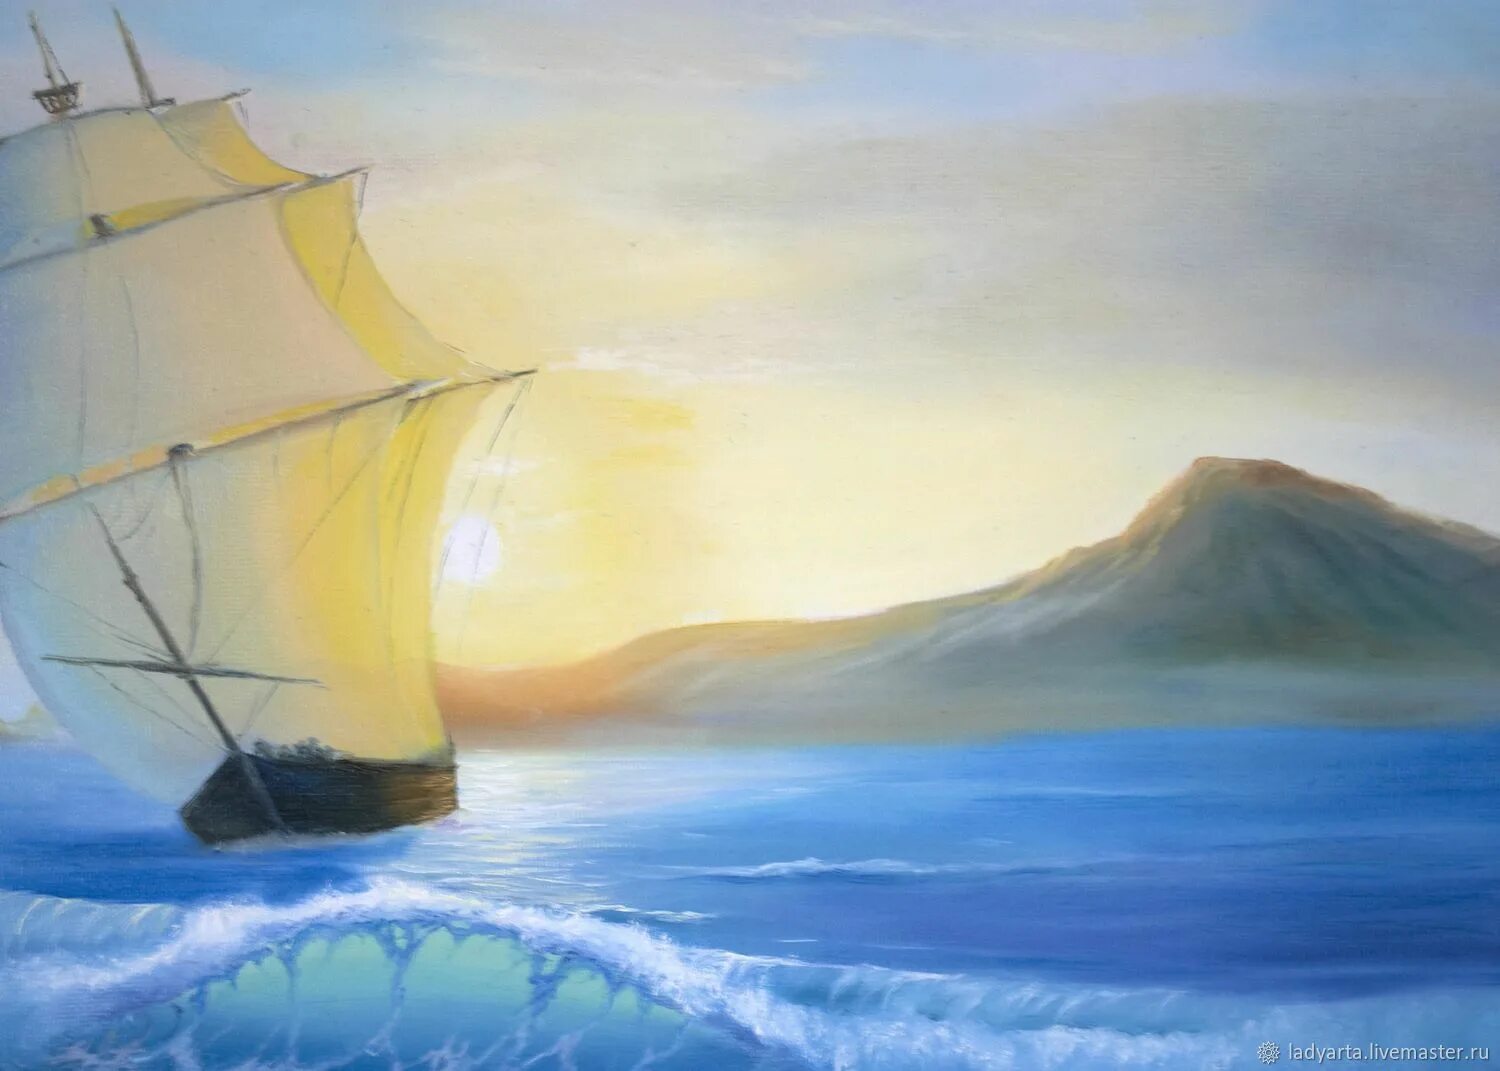 Гуляет ветер по волнам. Кораблик волна. Кораблик картина. Картина ветер по морю гуляет. Кораблик на ветру.